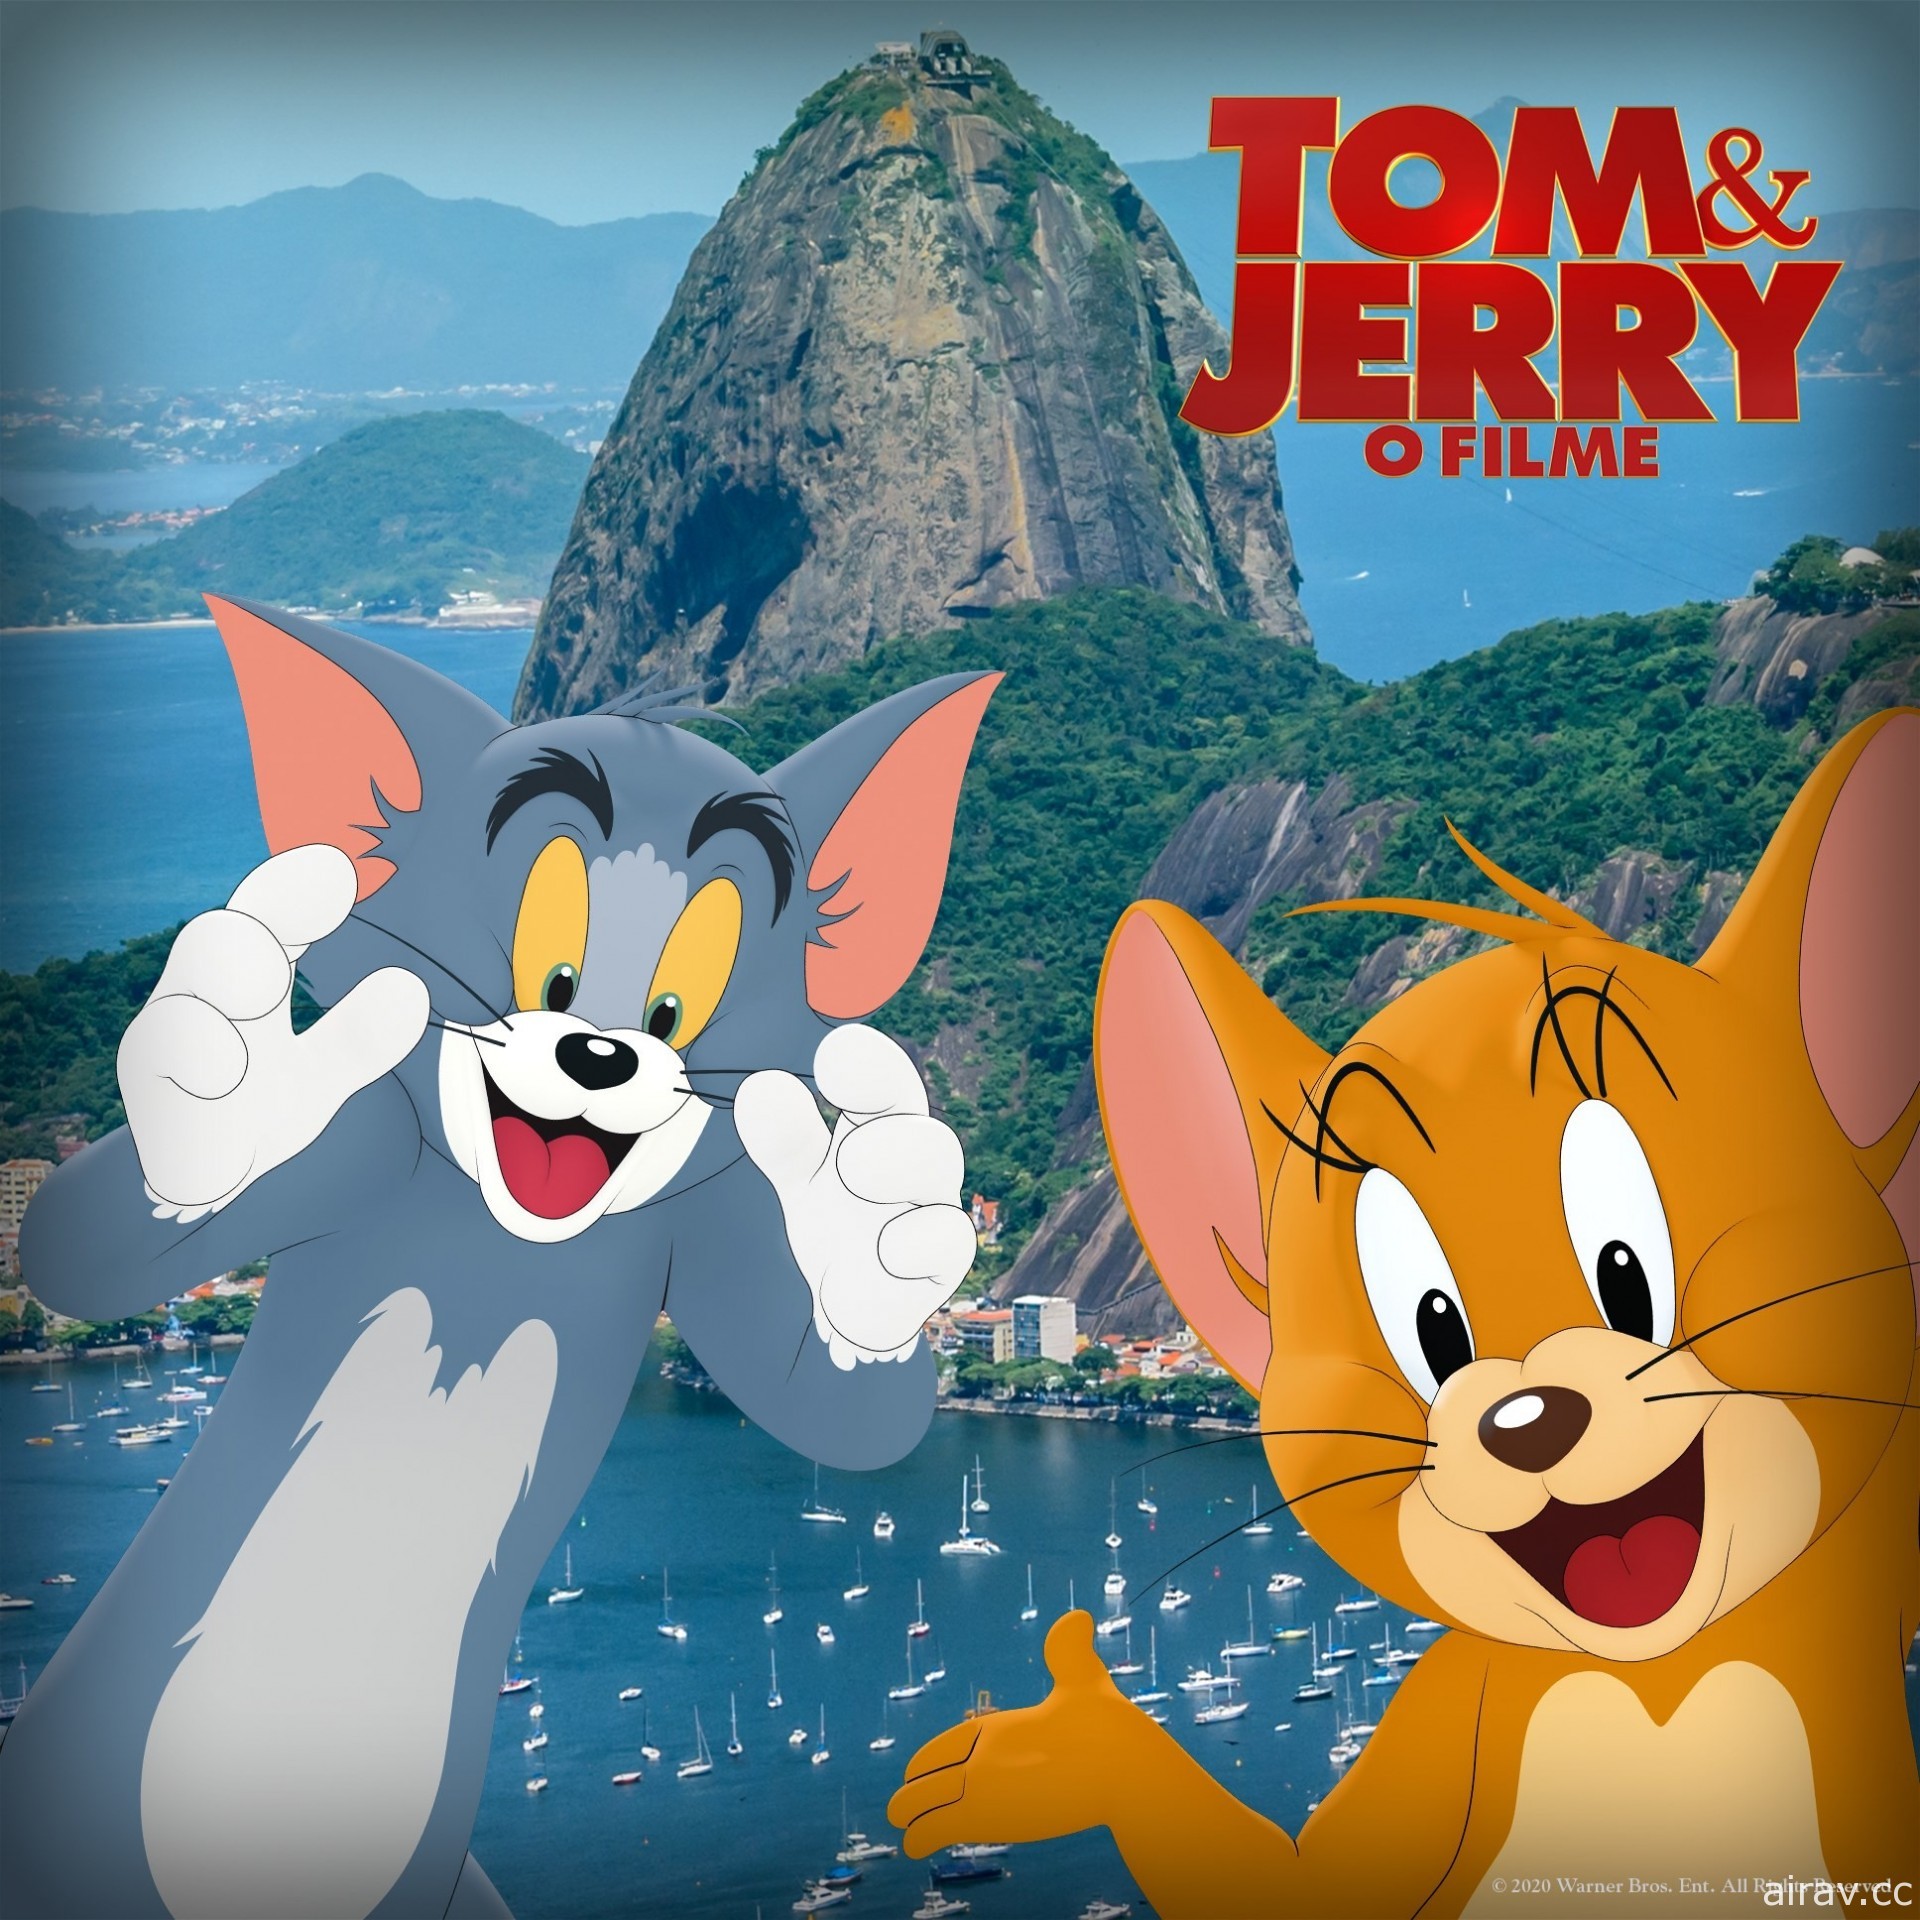 克蘿伊摩蕾茲參演《湯姆貓與傑利鼠》電影預告宣傳影片釋出 2021 年上映